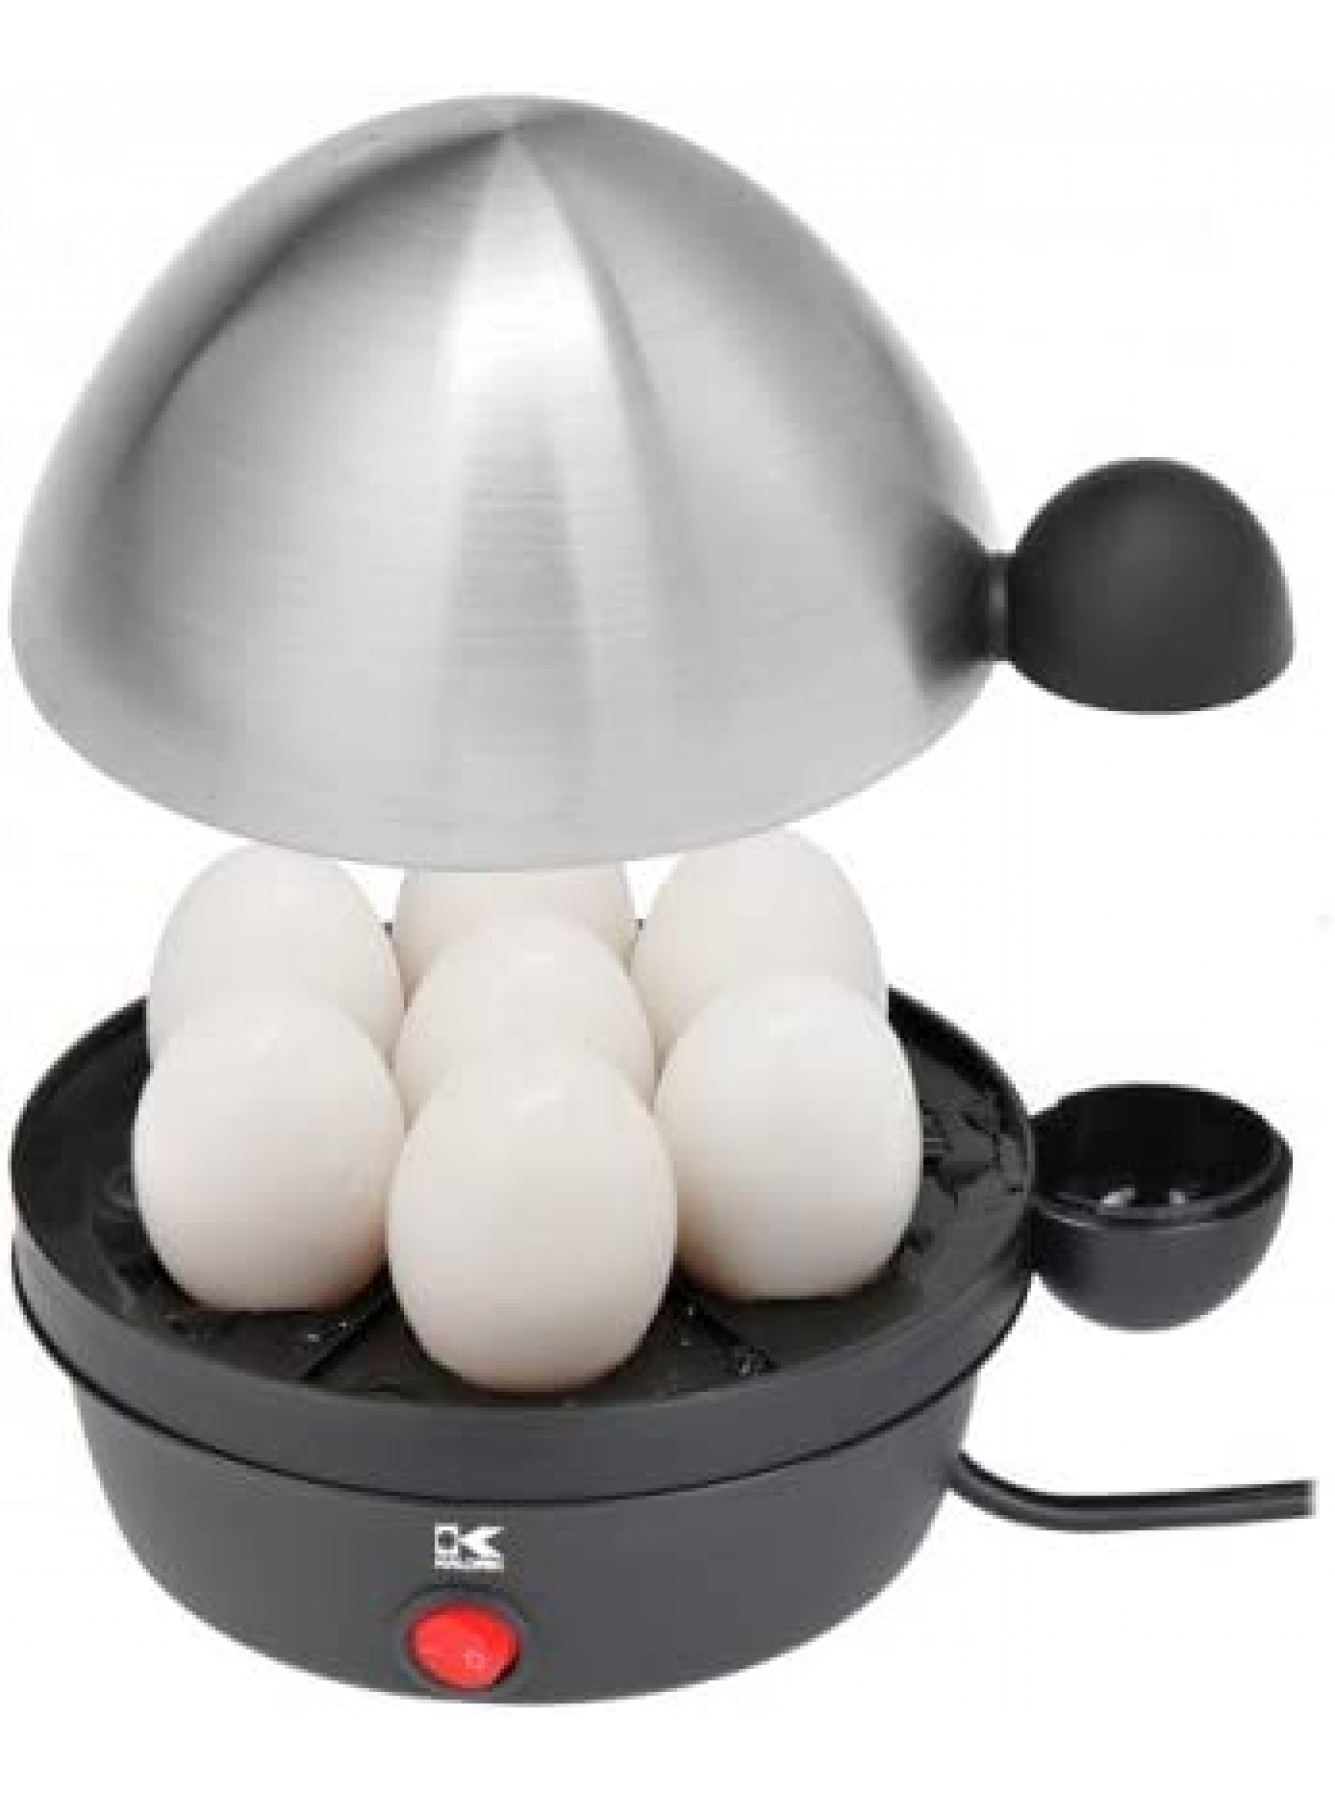 Kalorik Stainless Steel Egg Cooker Black Stainless Steel B005PUB6DA